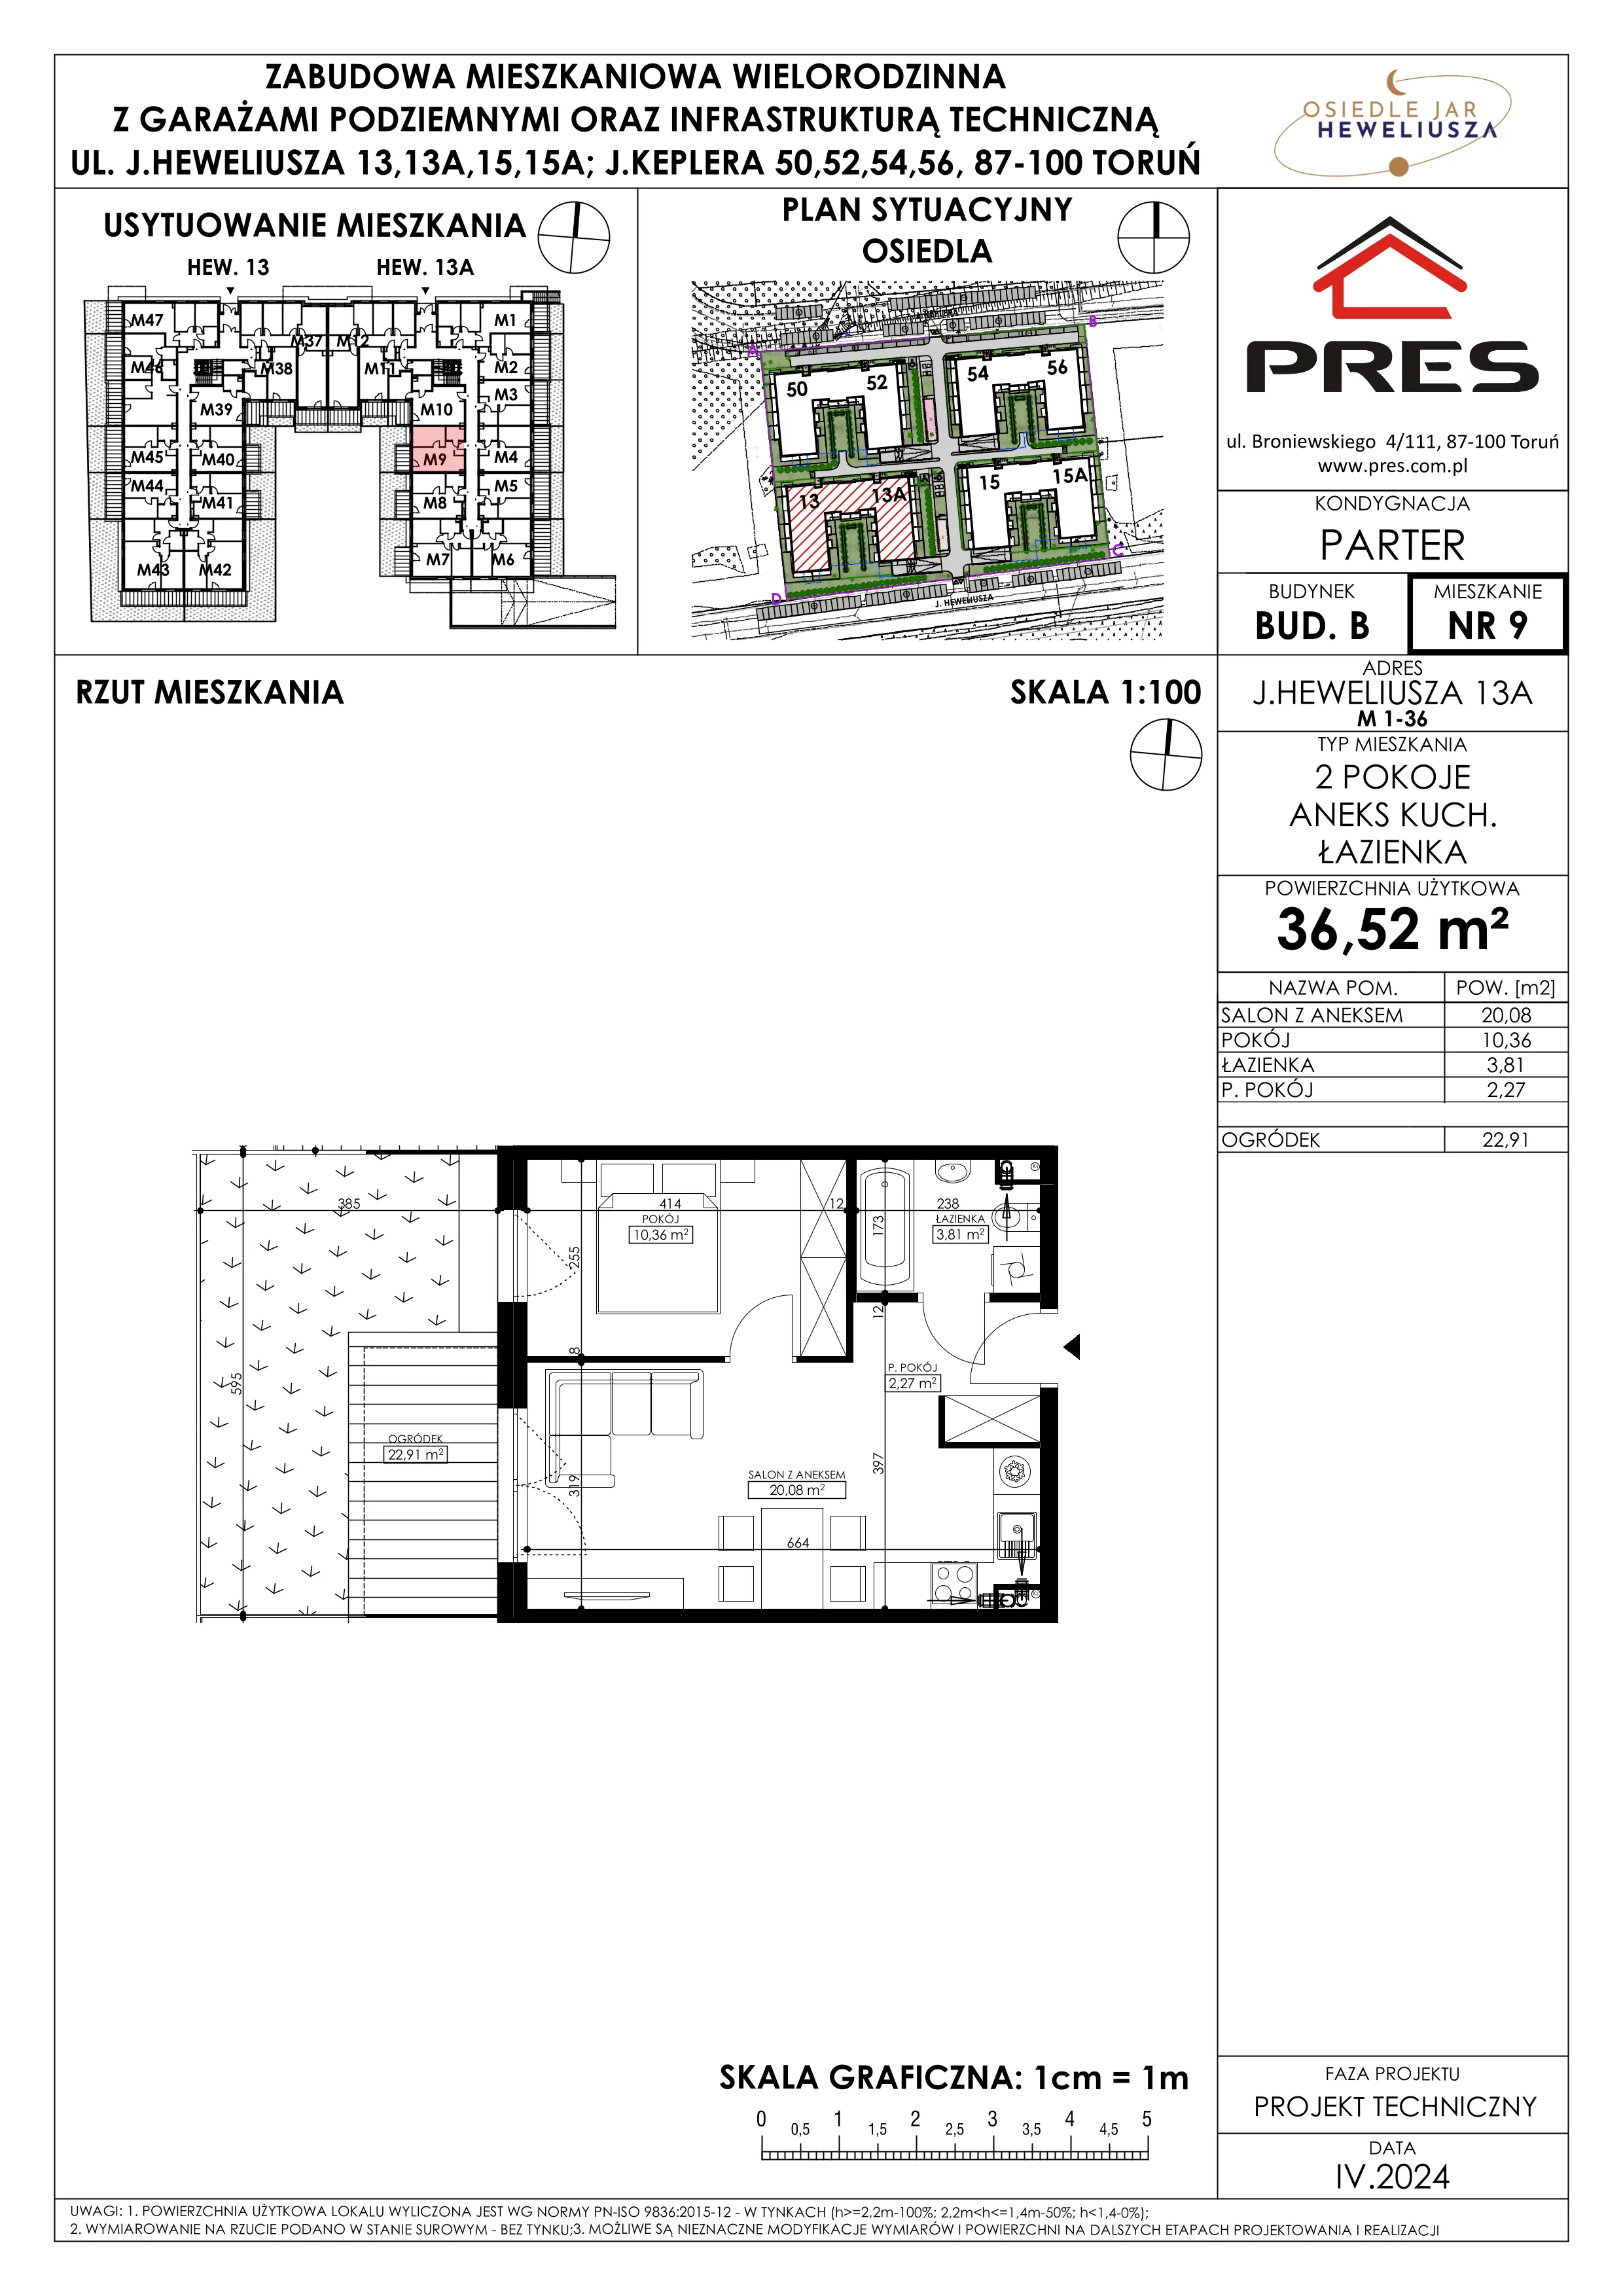 Mieszkanie 36,52 m², parter, oferta nr 9, Osiedle JAR Heweliusza - Etap II, Toruń, Wrzosy, JAR, ul. Heweliusza 13-15A